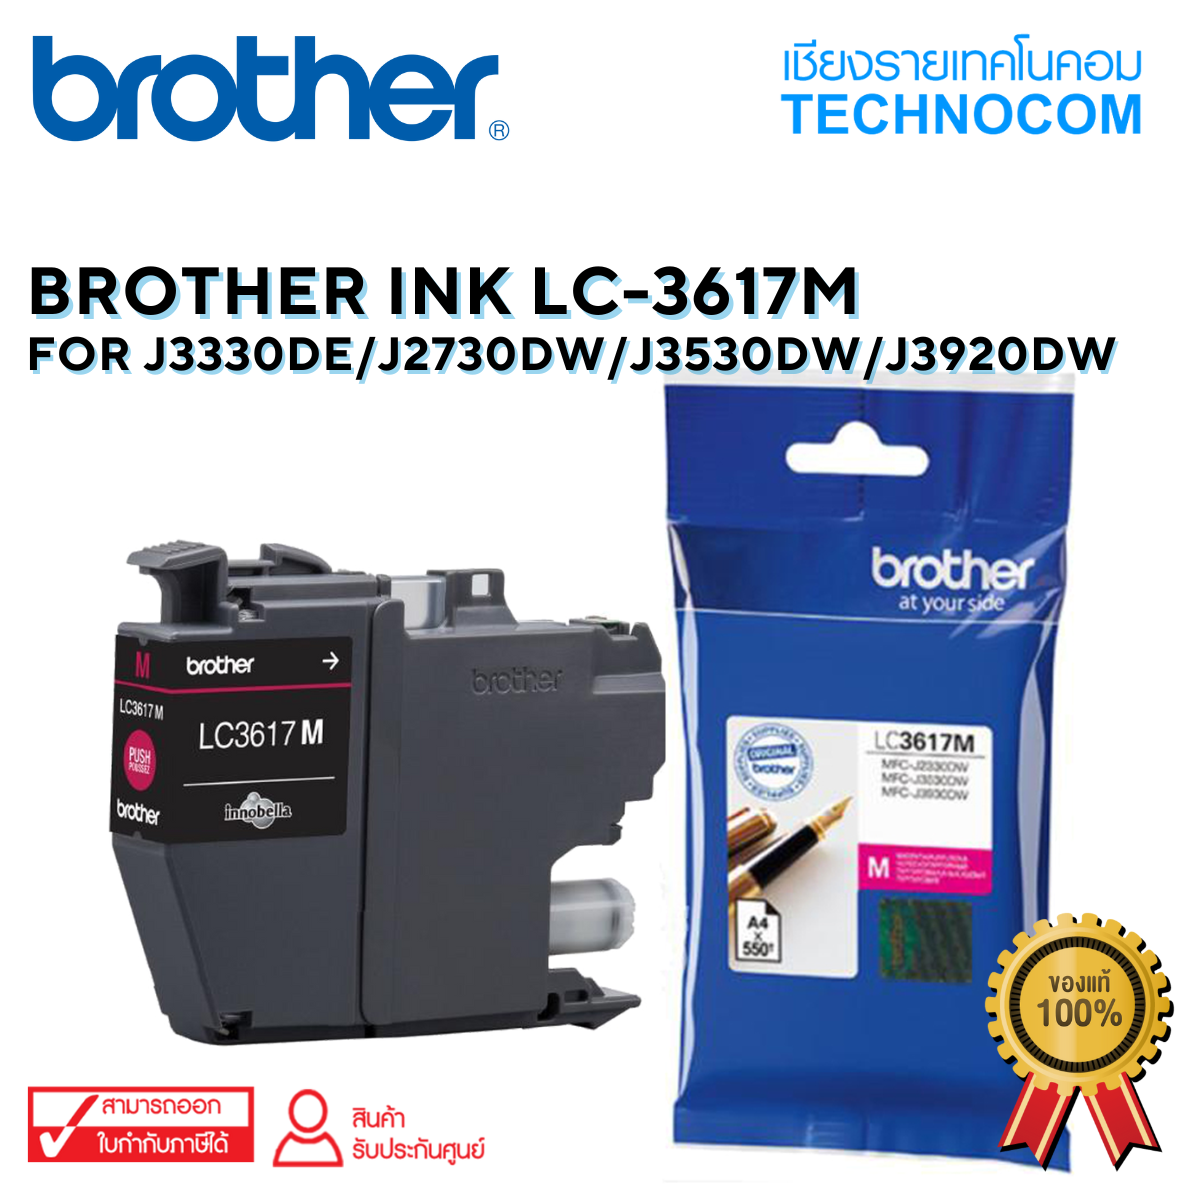 BROTHER INK LC-3617M For J2330DW/J2730DW/J3530DW/J3920DW(copy)(copy)